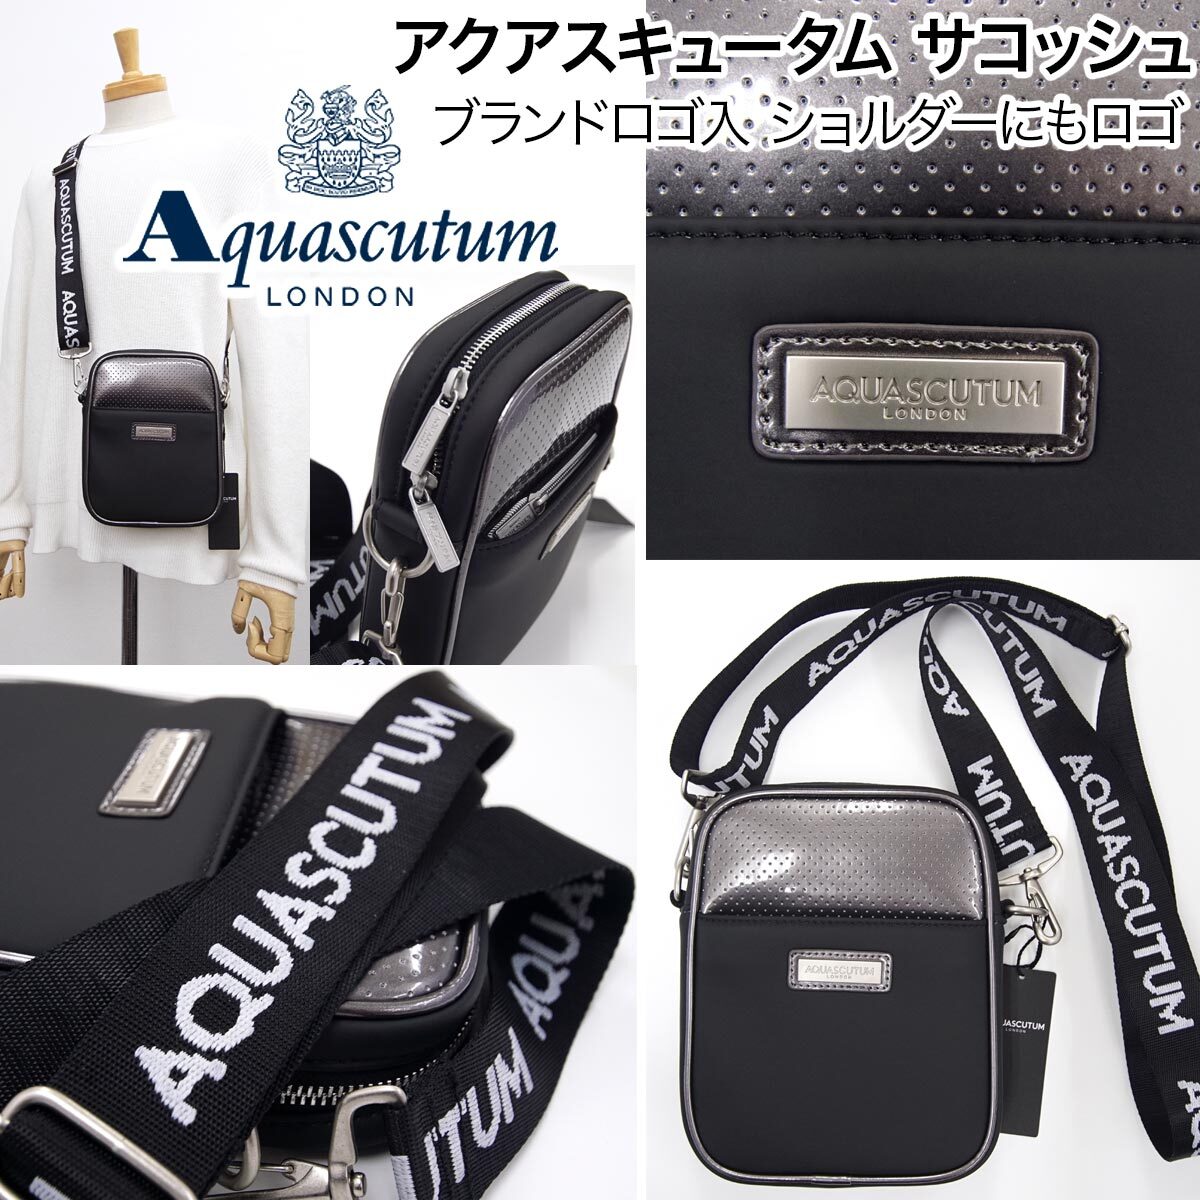 [ новый товар ] Aquascutum Golf sakoshu сумка сумка на плечо сумка шнур . бренд название ввод Logo plate есть легкий внутренний стандартный товар Aquascutum